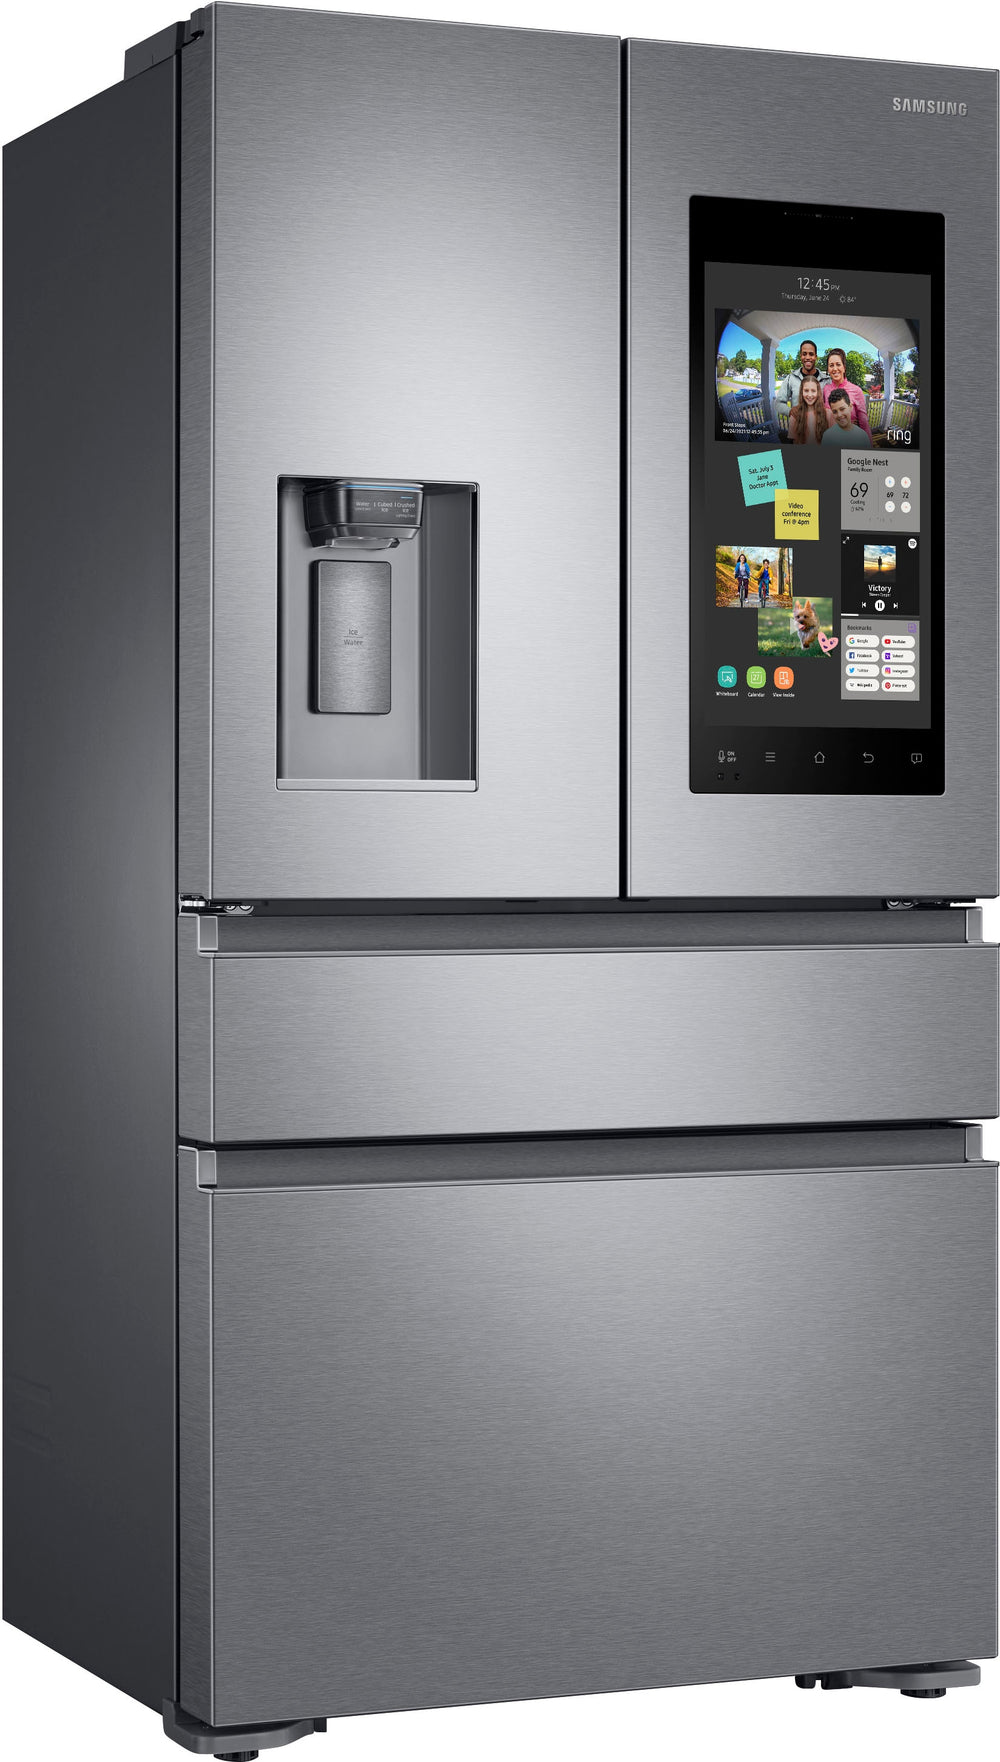 Samsung - Family Hub 22.2 Cu. Ft. Counter Depth 4-Door French Door Fingerprint Resistant Refrigerator - Stainless steel_1